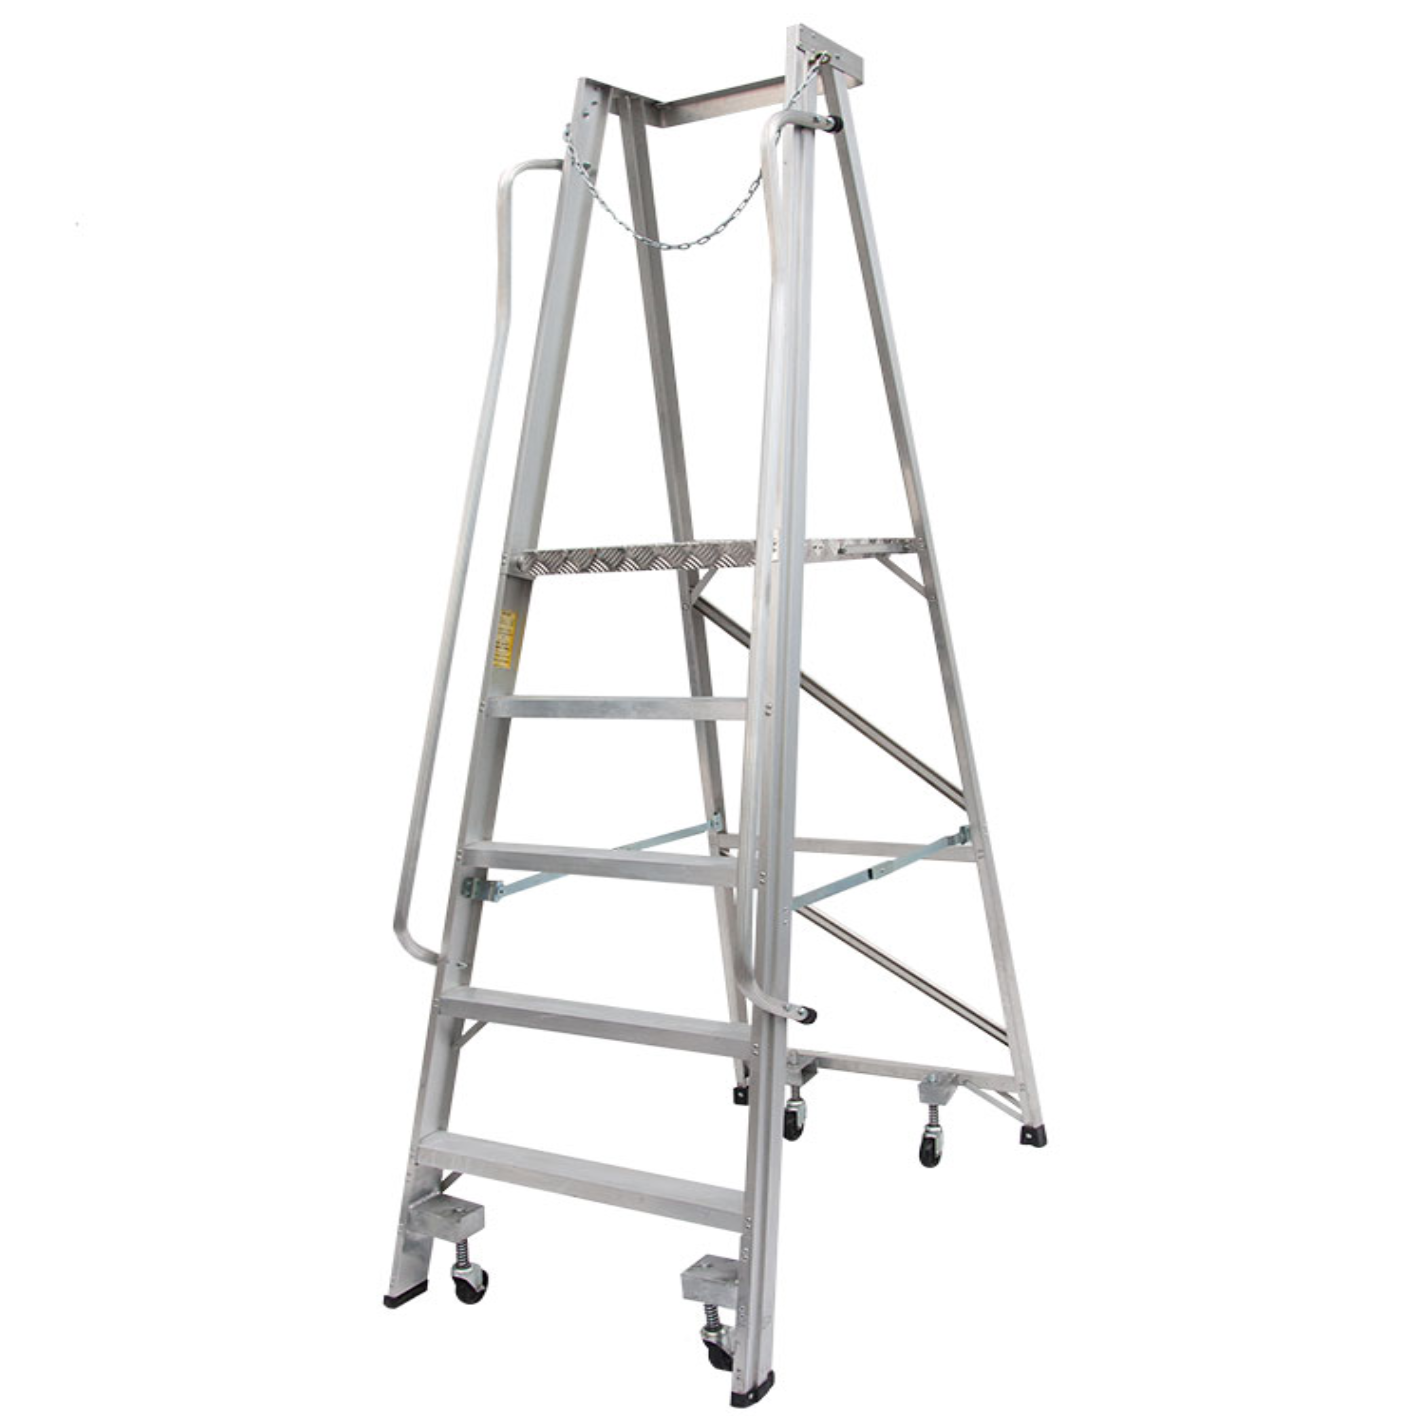 LadderMenn Heavy Duty Platform Ladder With Wheels